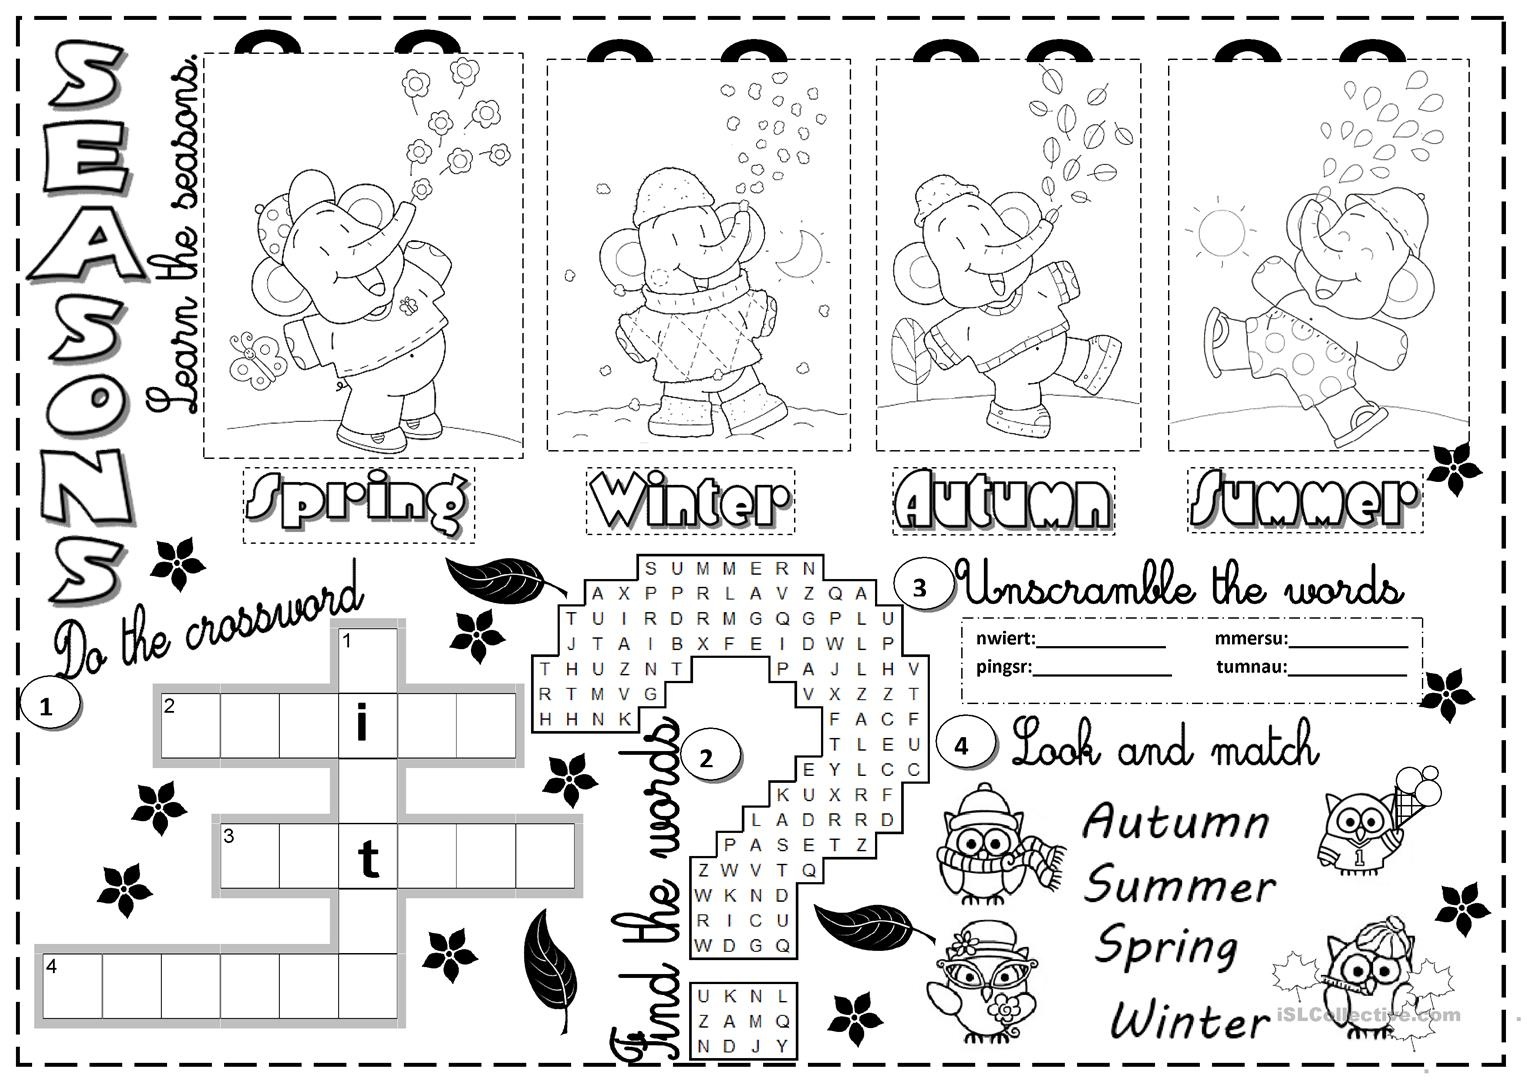 Seasons Worksheet - Free Esl Printable Worksheets Madeteachers - Free Printable Seasons Worksheets For Kindergarten